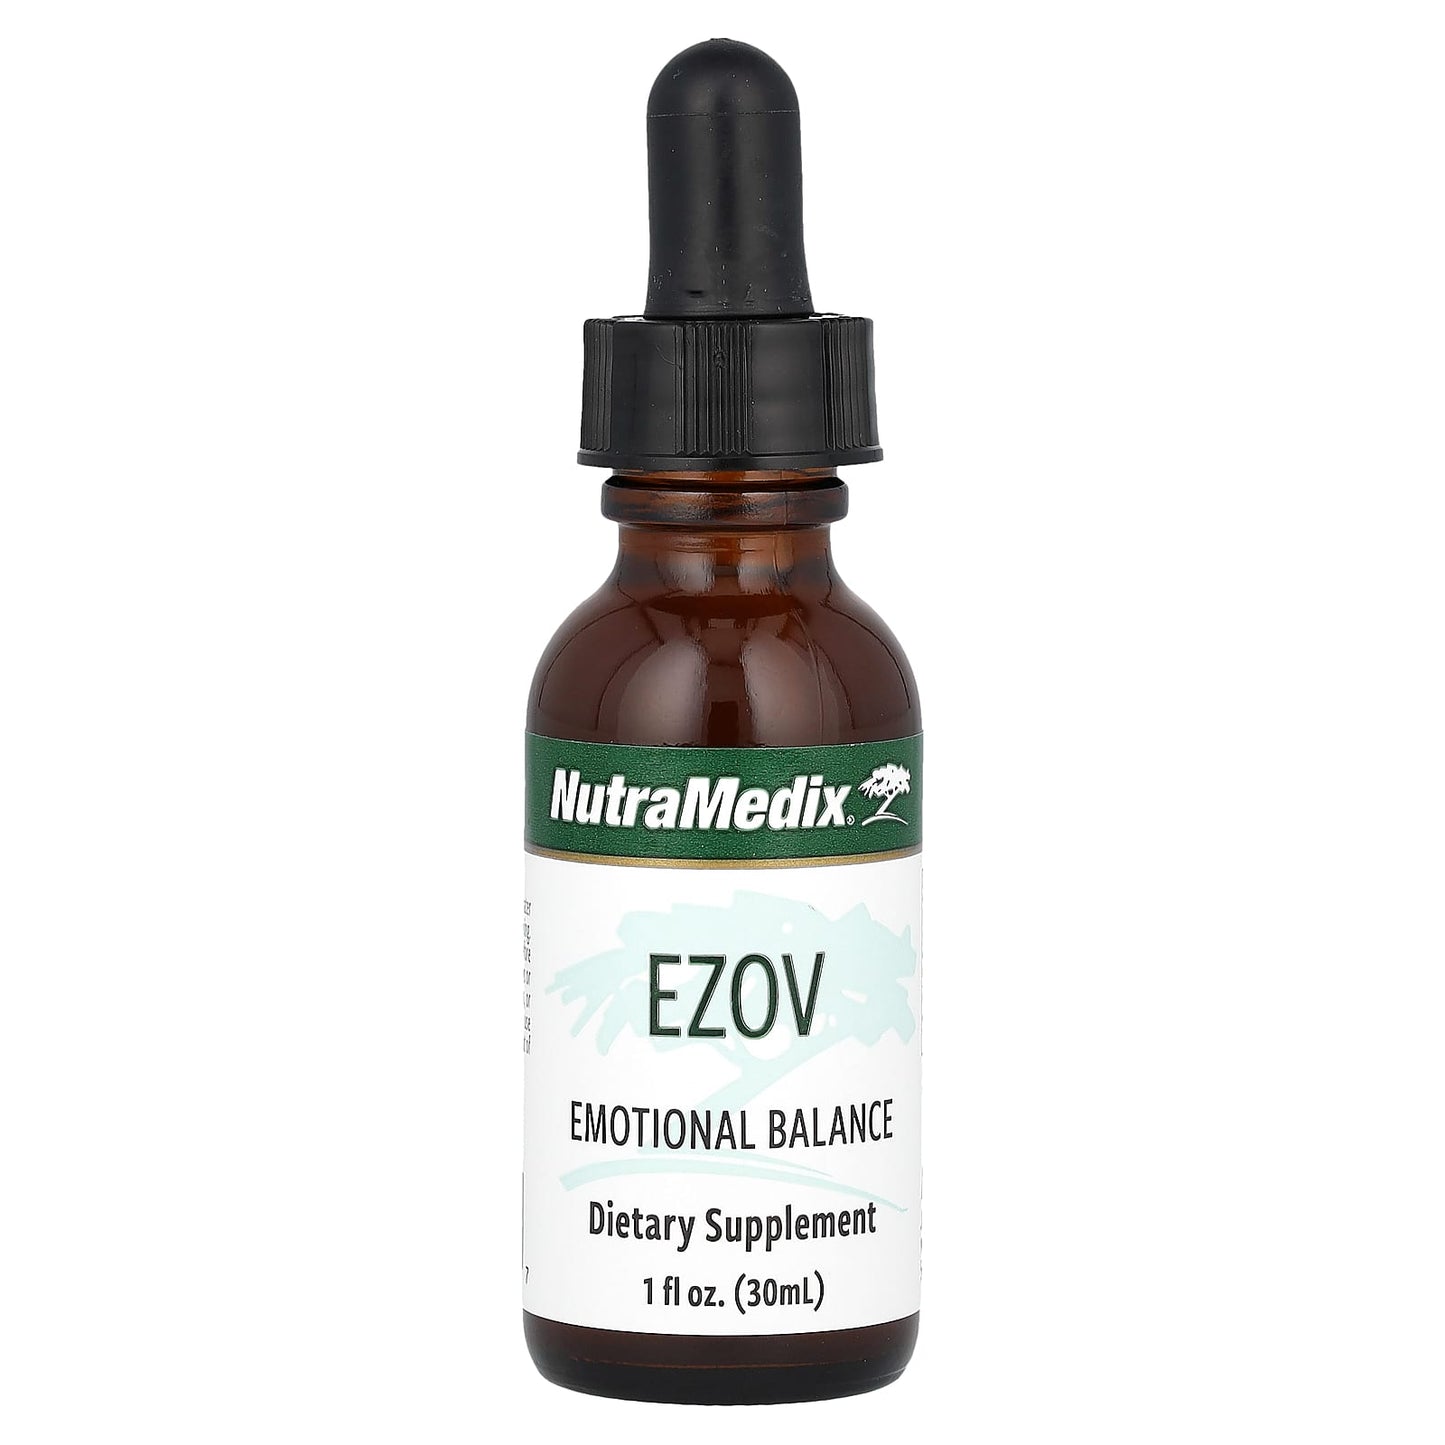 NutraMedix-Ezov-Emotional Balance-1 fl oz (30 ml)